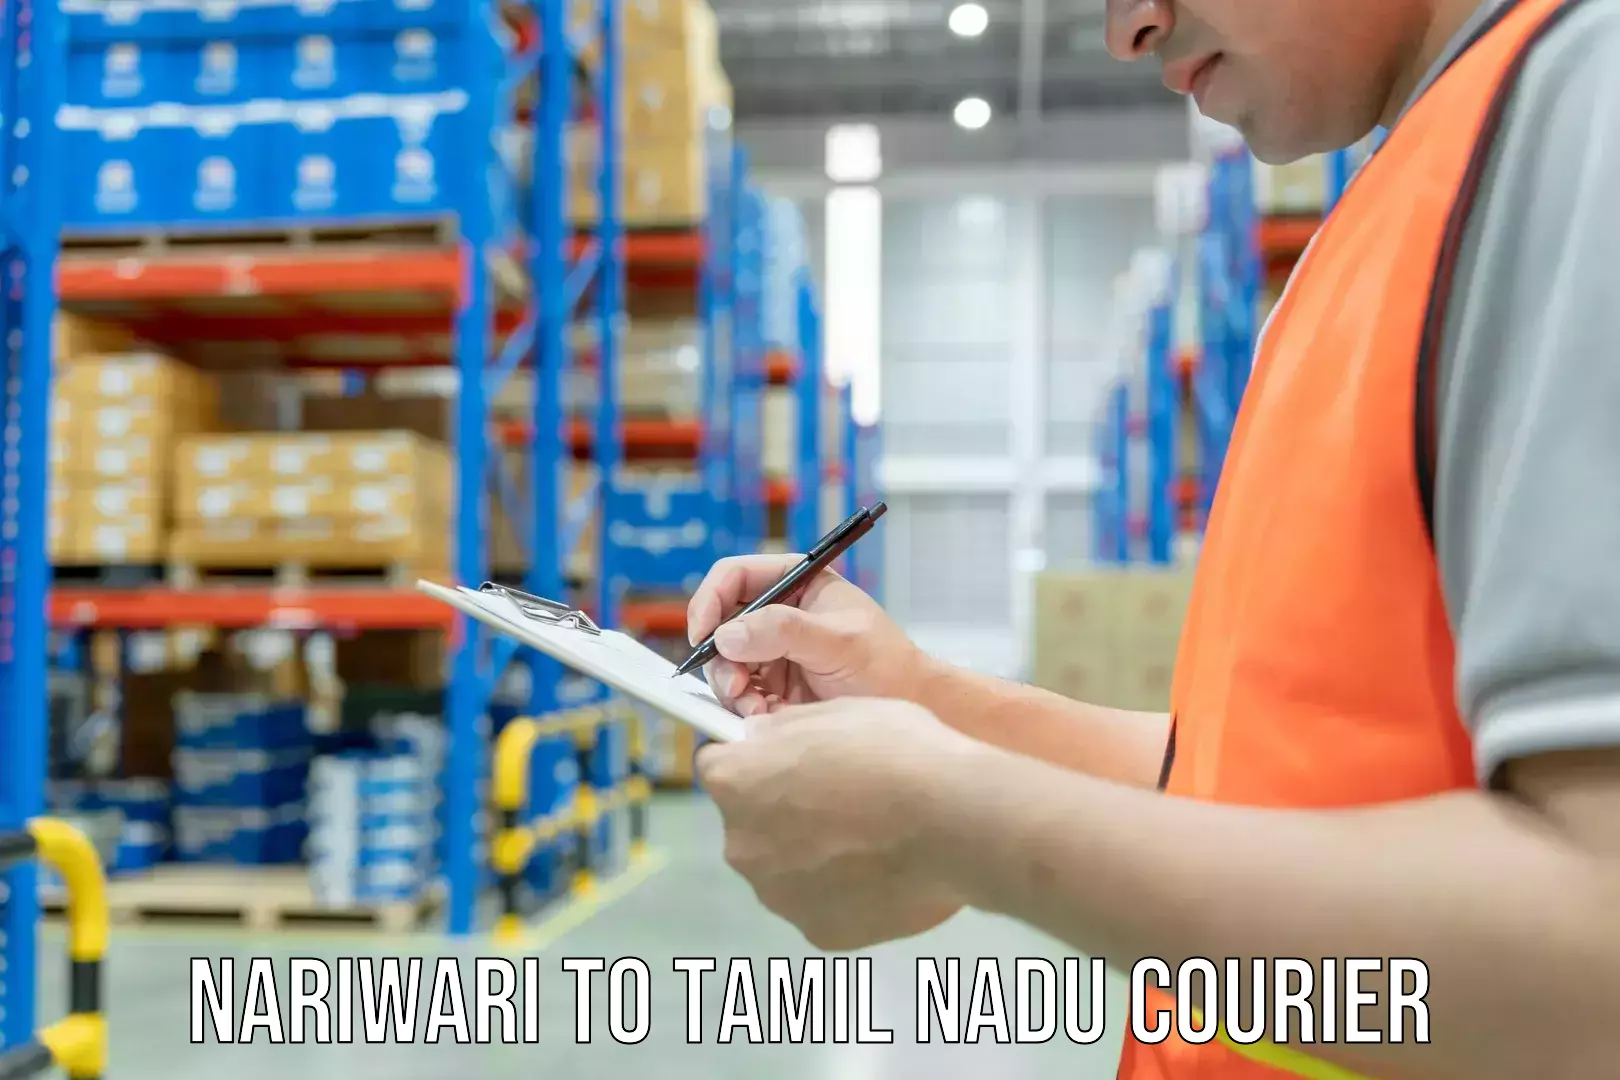 Furniture moving experts Nariwari to Tamil Nadu